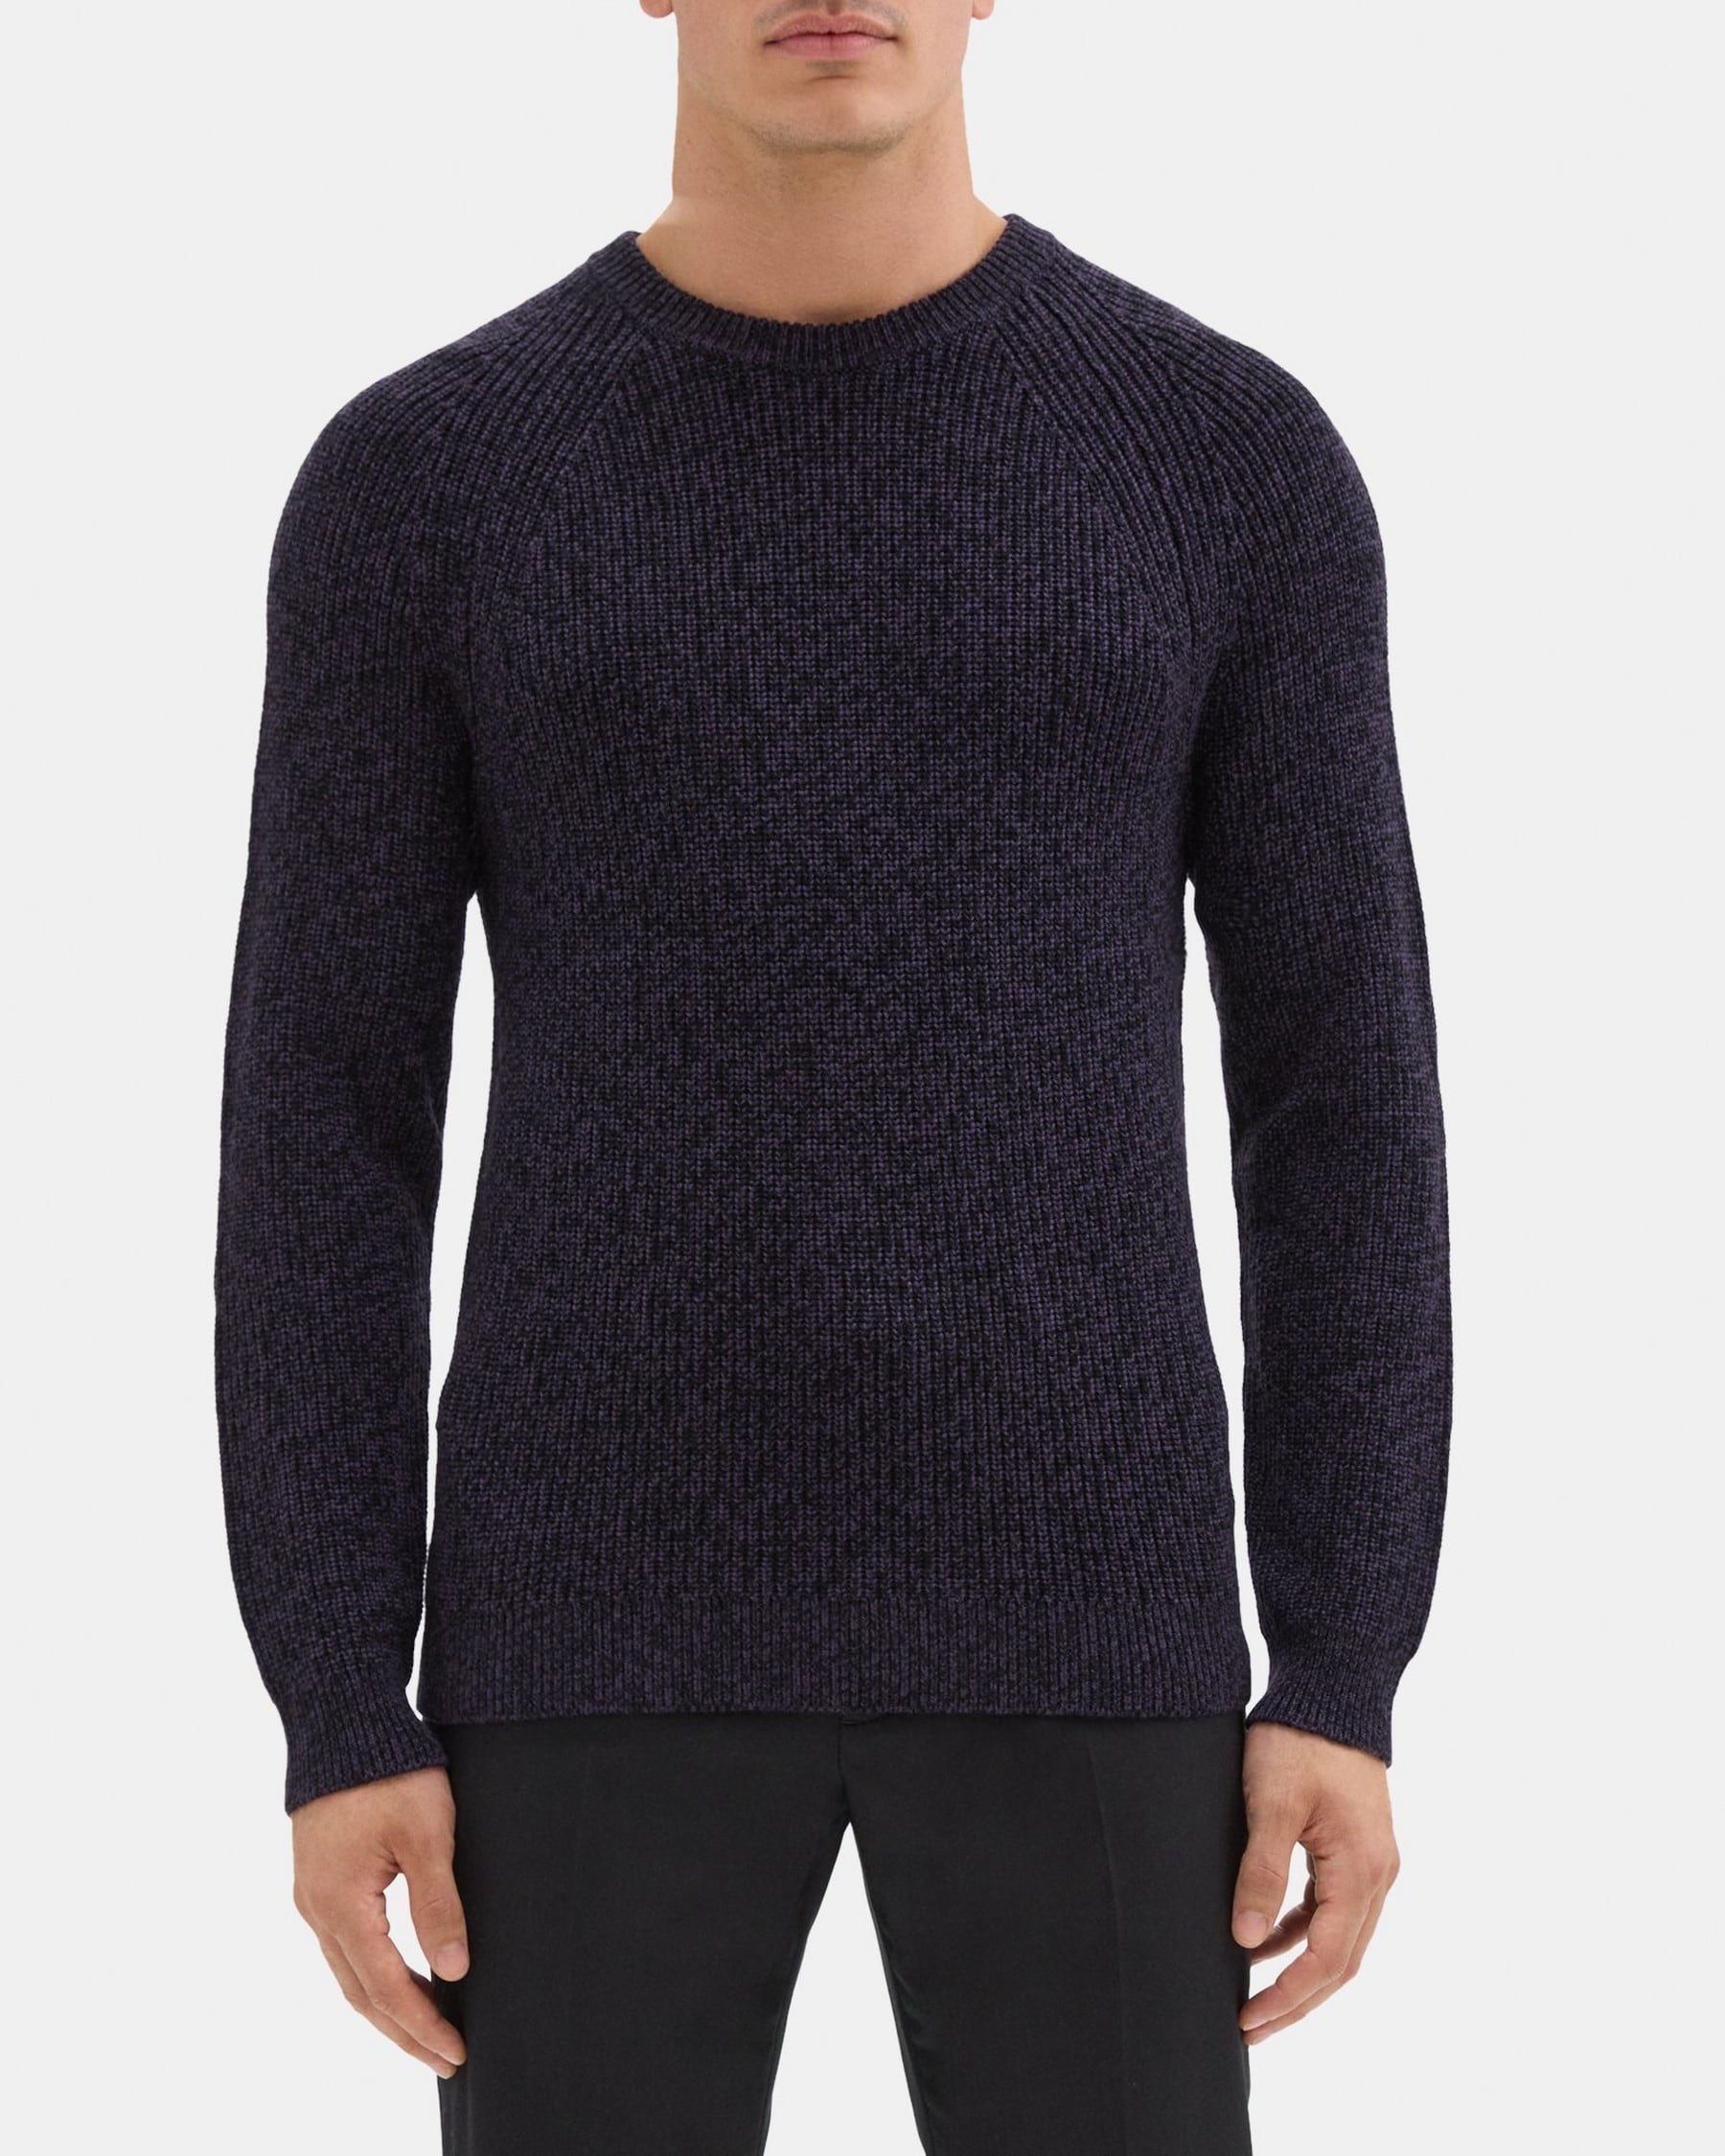 띠어리 Theory Crewneck Sweater in Merino Wool,BLACK/CONCORD